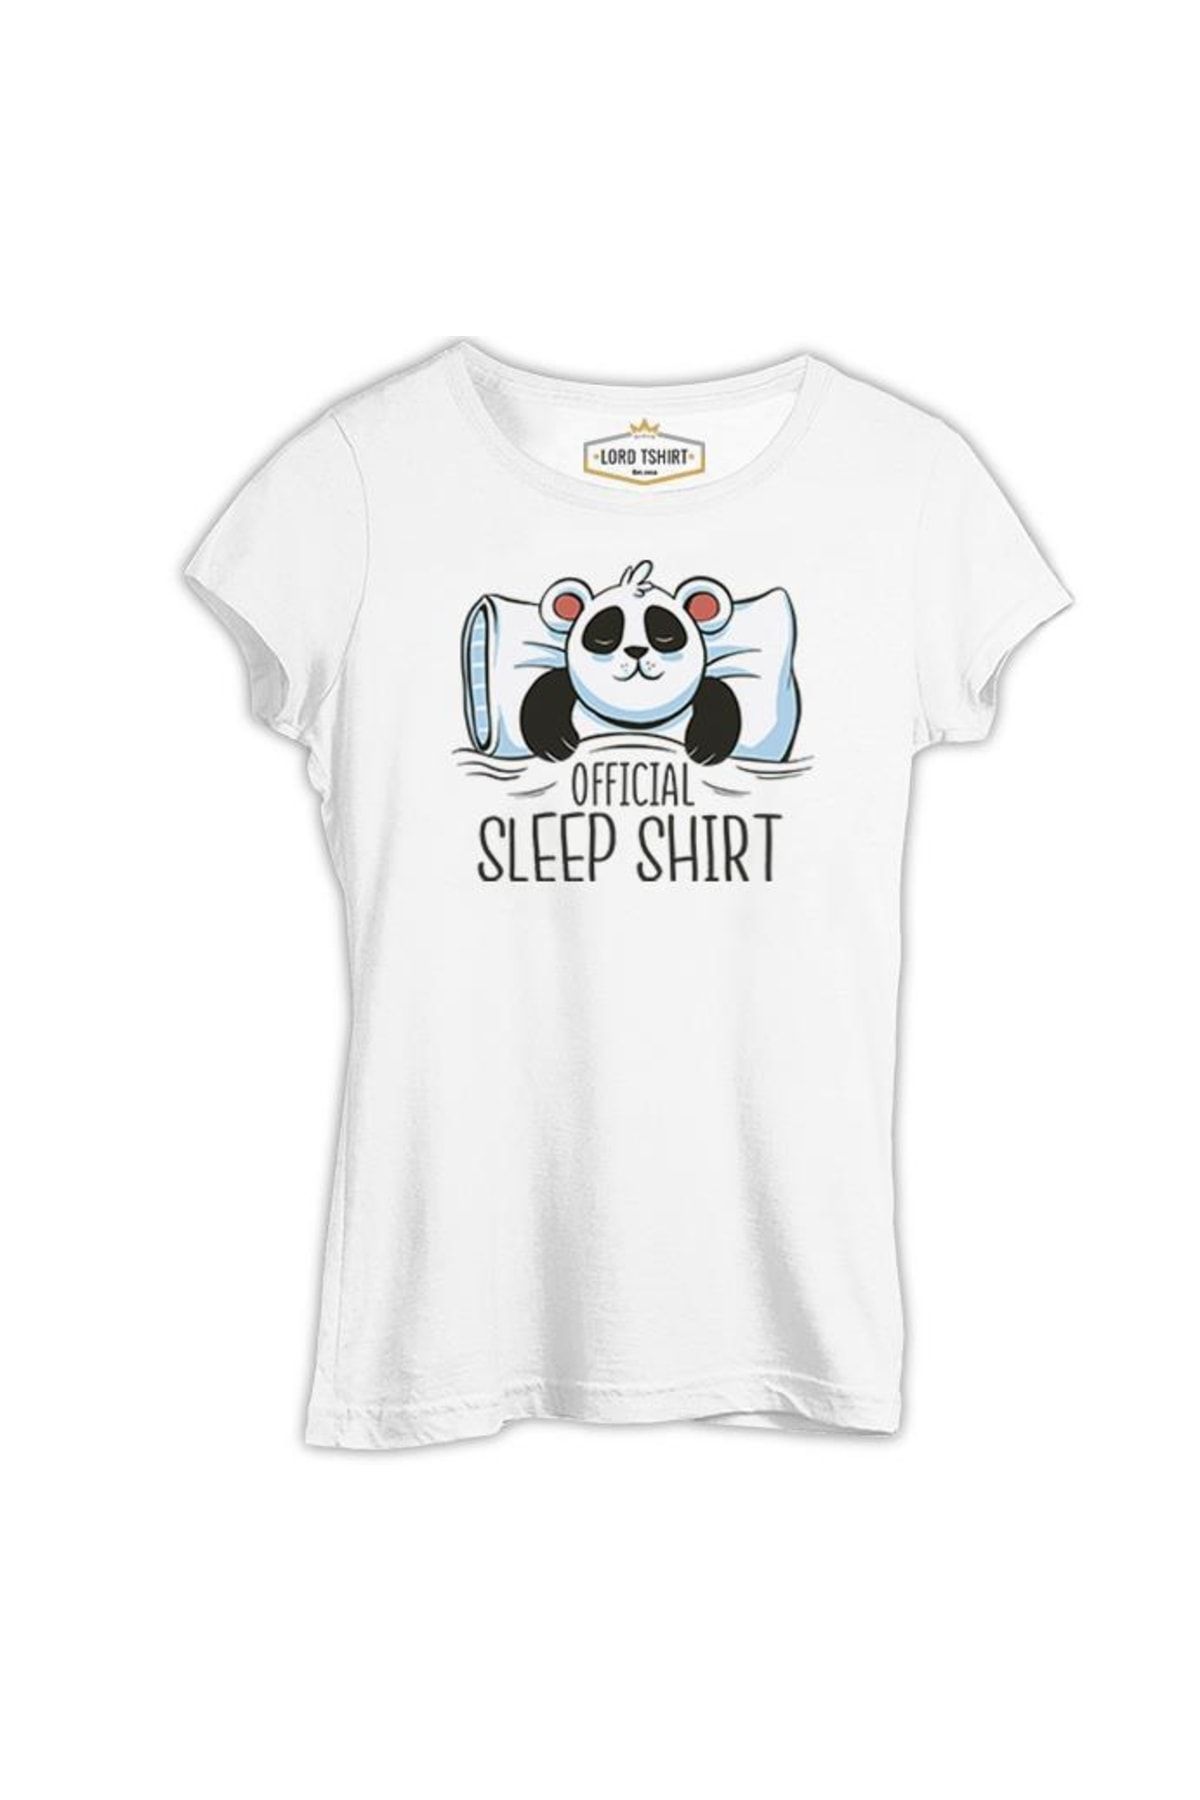 Lord T-Shirt Official Sleep Tshirt Panda Sleeping Beyaz Tshirt